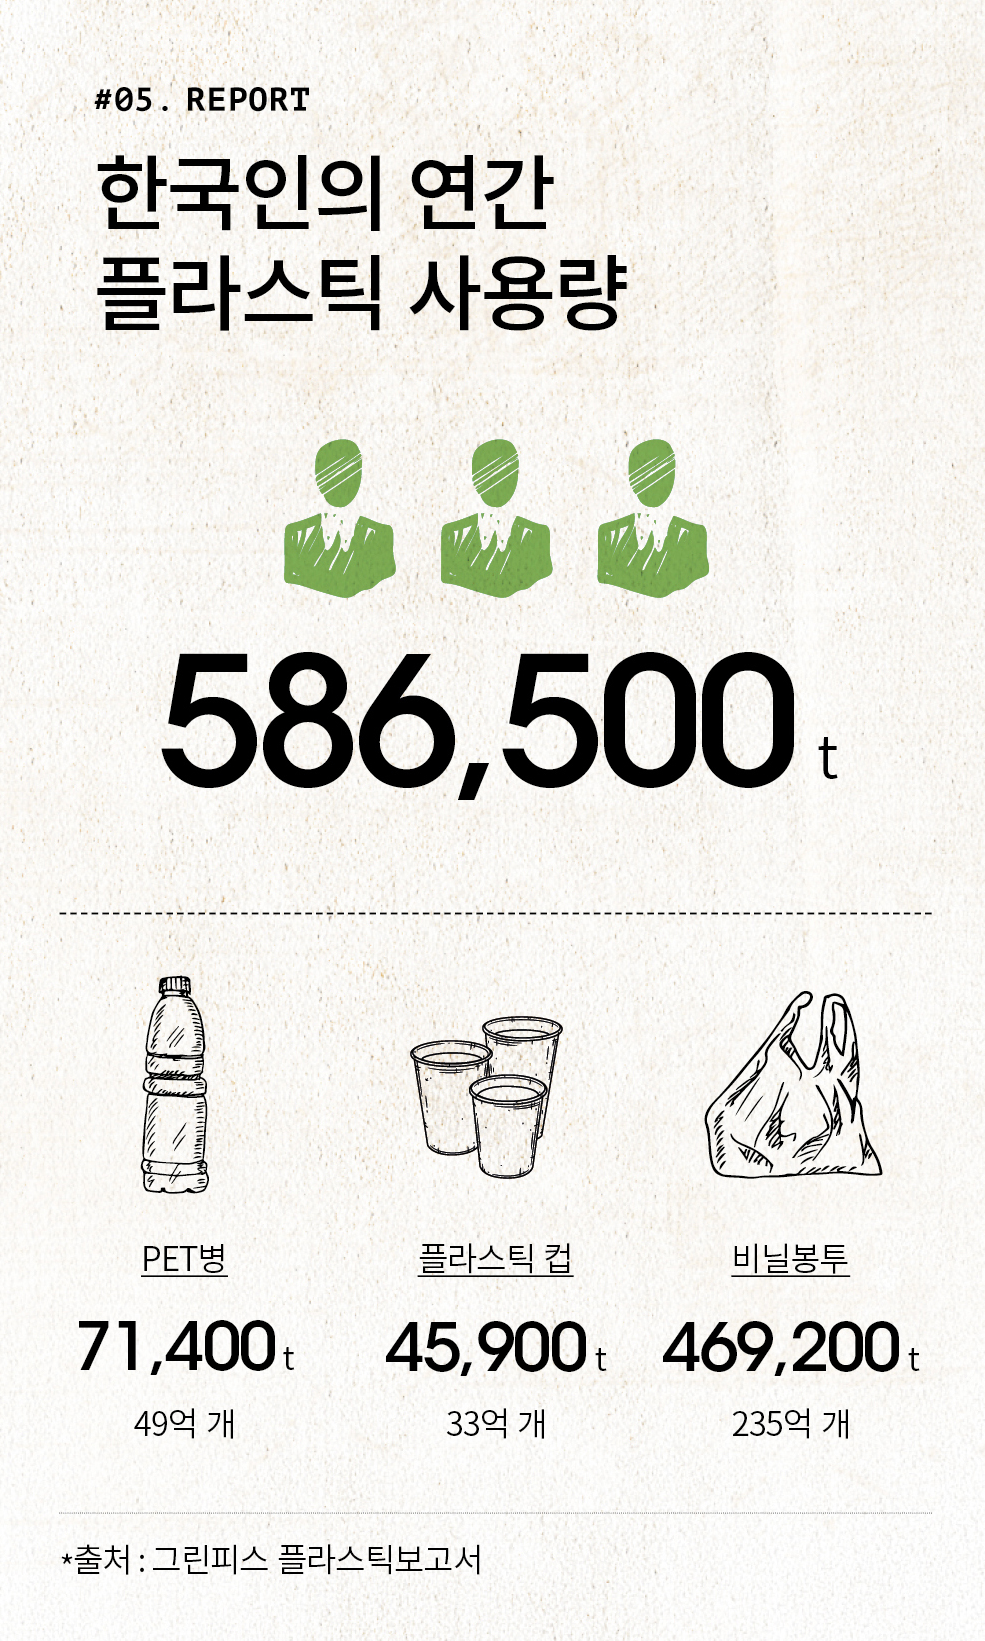 #05. REPORT 한국인의 연간 플라스틱 사용량 586,500t PET병 71,400t 49억개 플라스틱 컵 45,900t 33억 개 비닐봉투 469,200t 235억 개 *출처:그린피스 플라스틱보고서